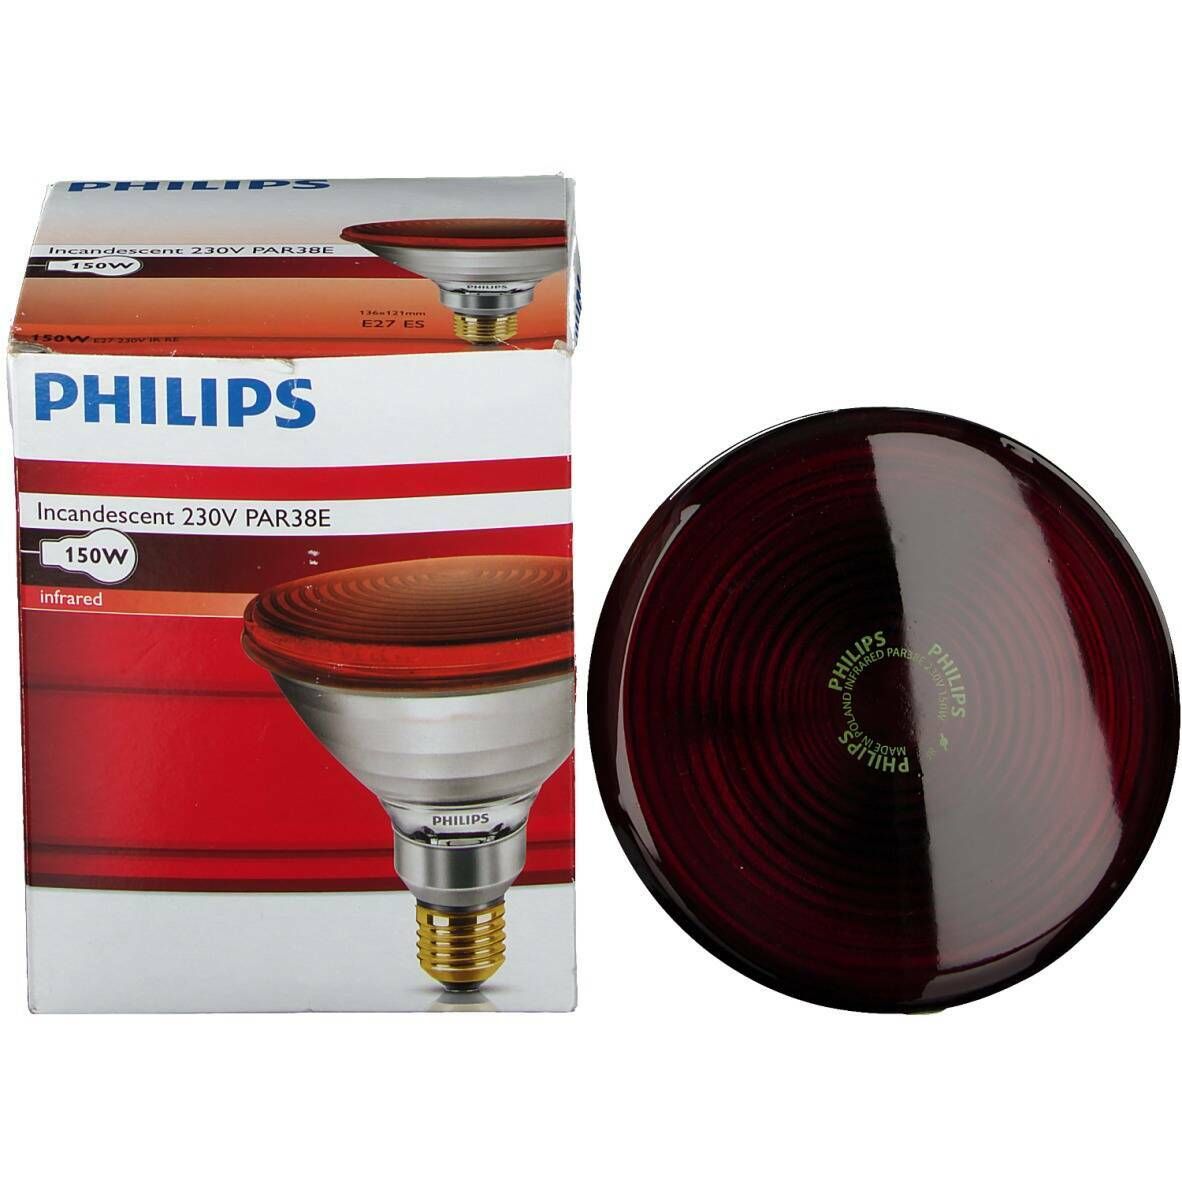 Philips Incandescent lampe infrarouge 230V/150W Par38E E27 ES 136 x 121 mm